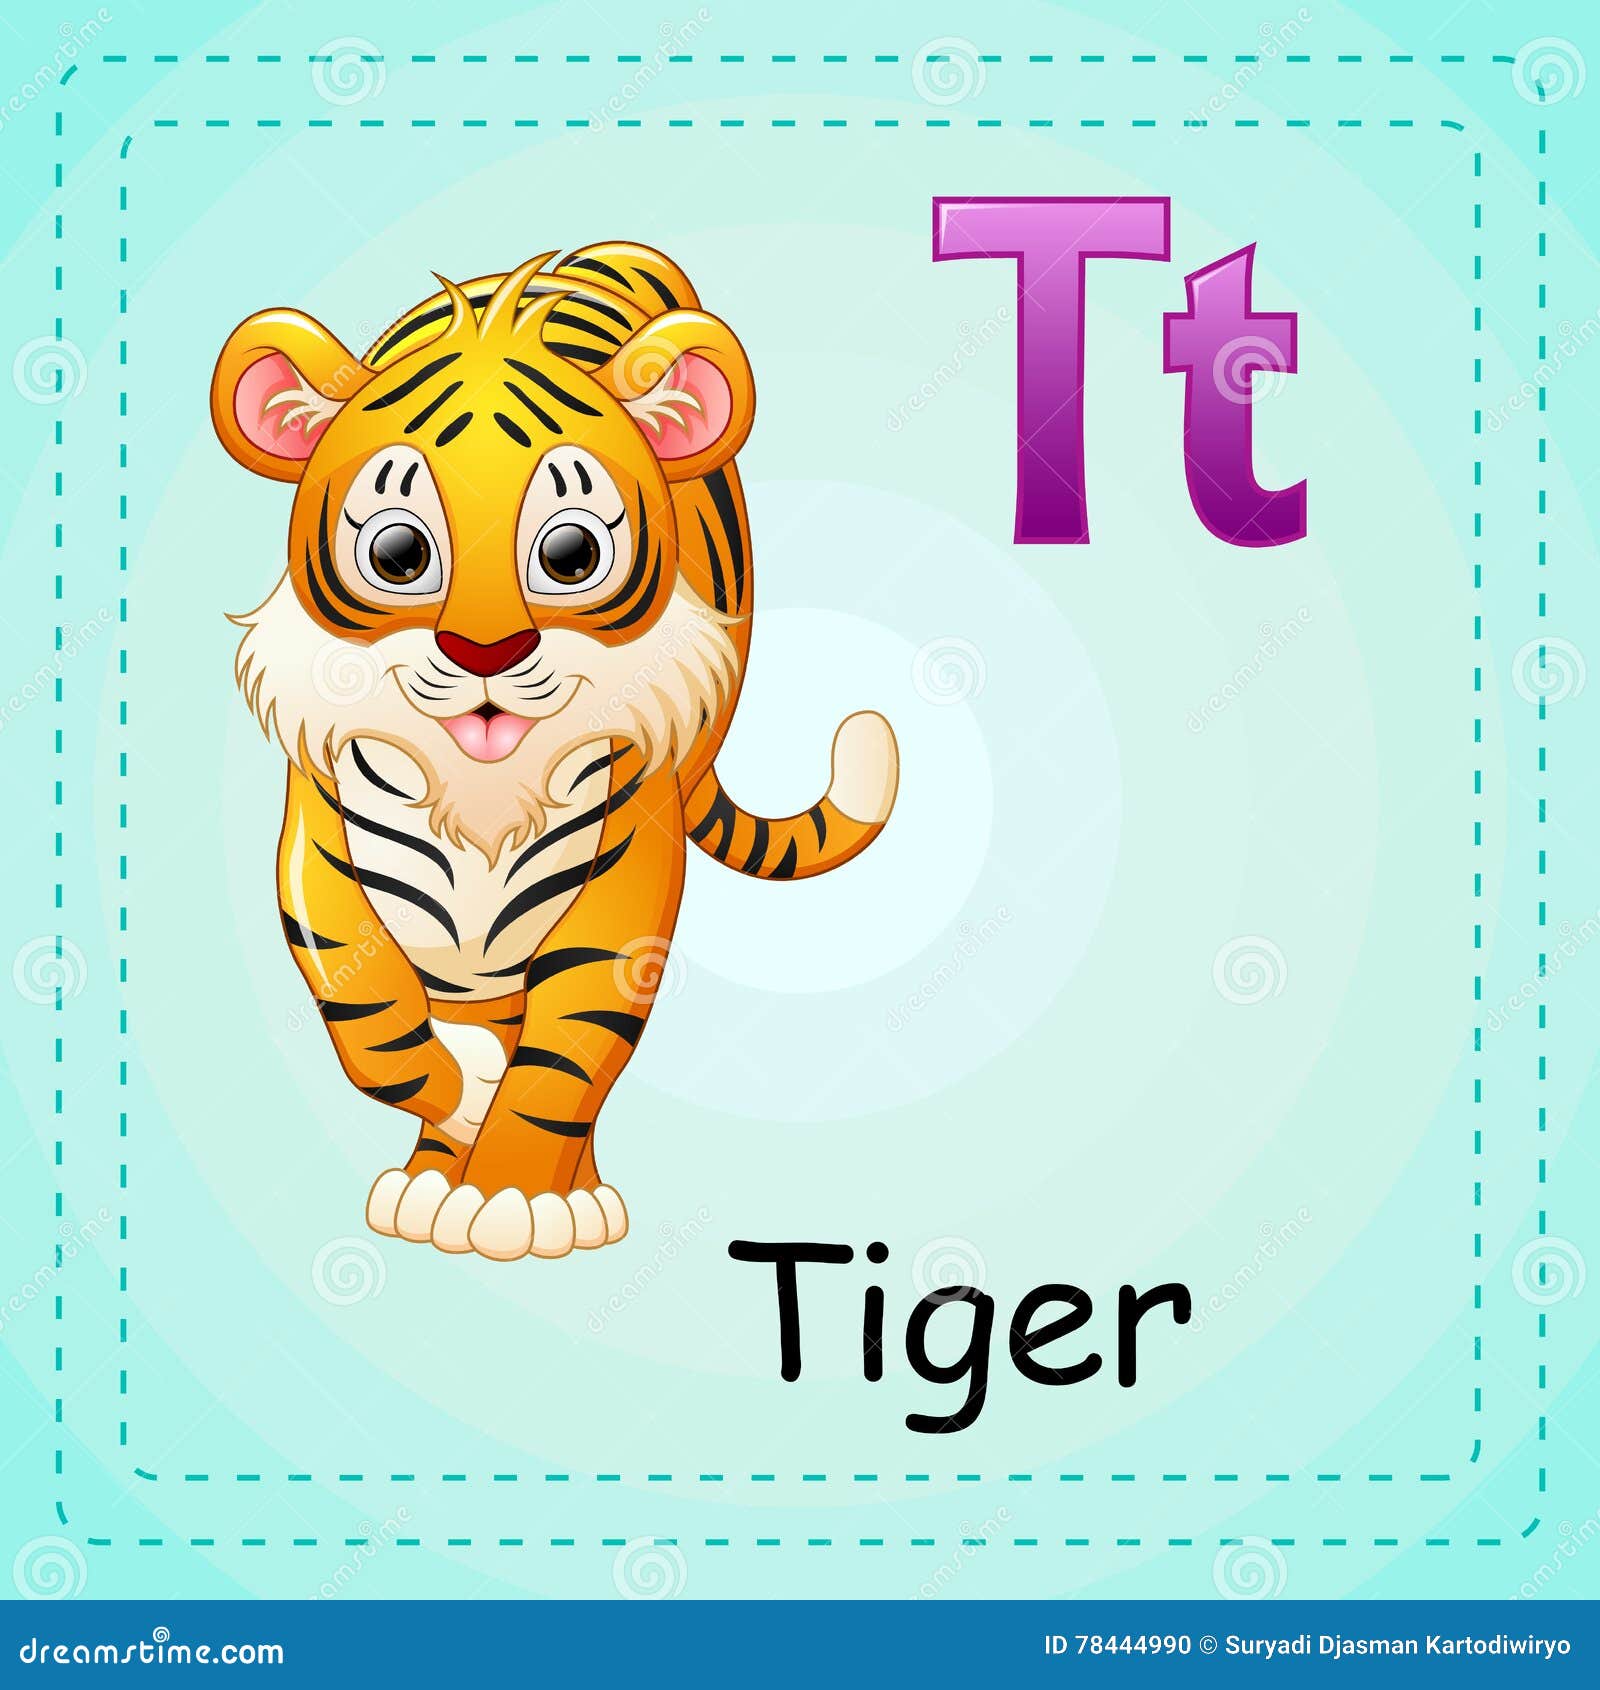 Тайгер на русском. Карточка с тигром на английском языке. Карточки по английскому языку тигр для детей. Буква т тигр. Тигр карточка для детей.